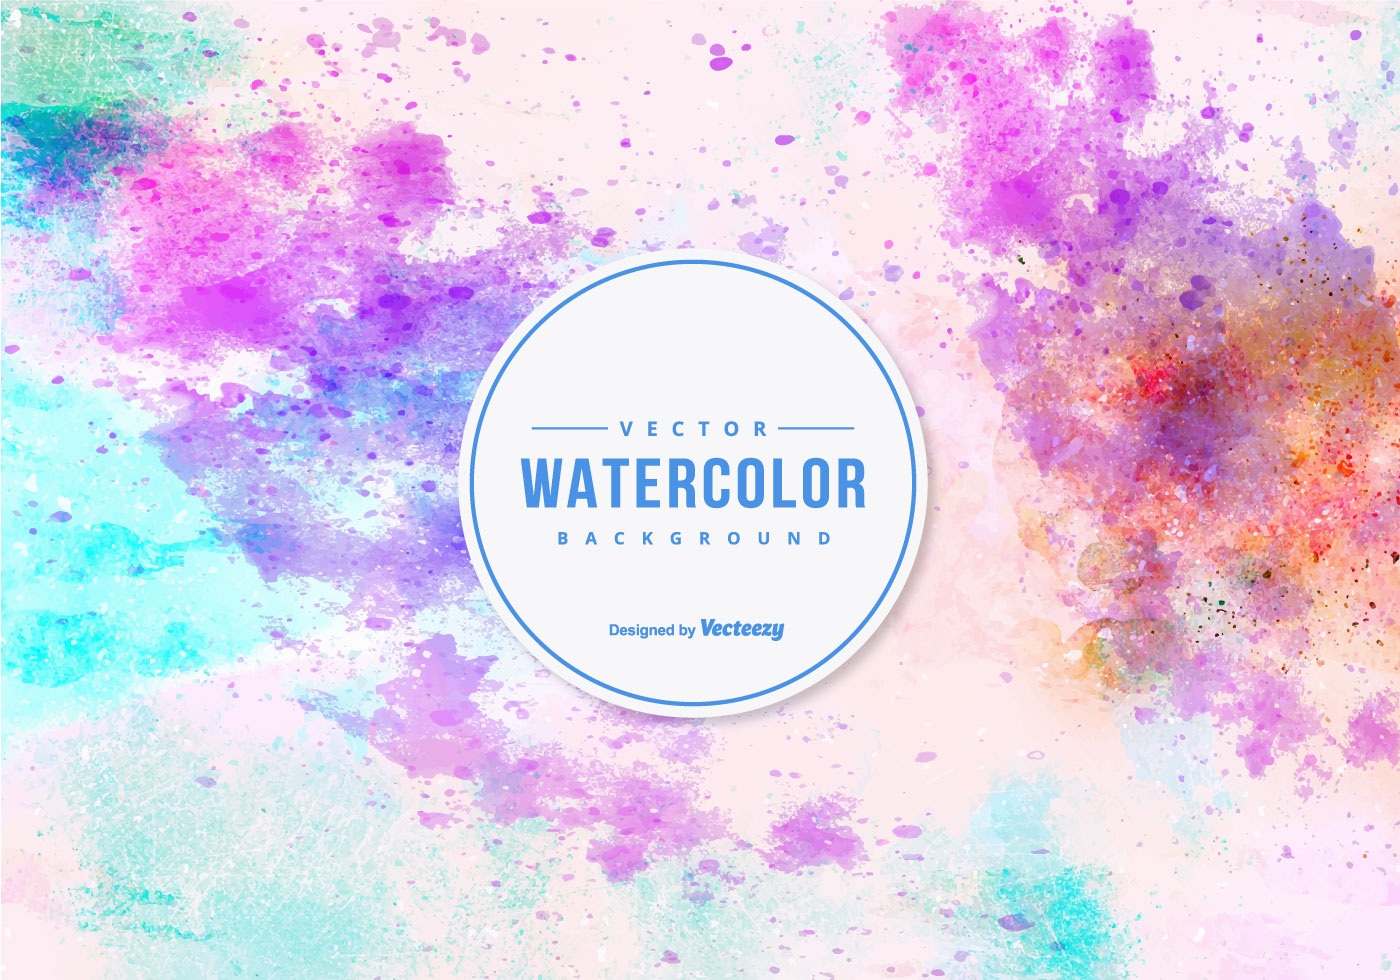 Download Watercolor Vector Background 152153 Vector Art at Vecteezy